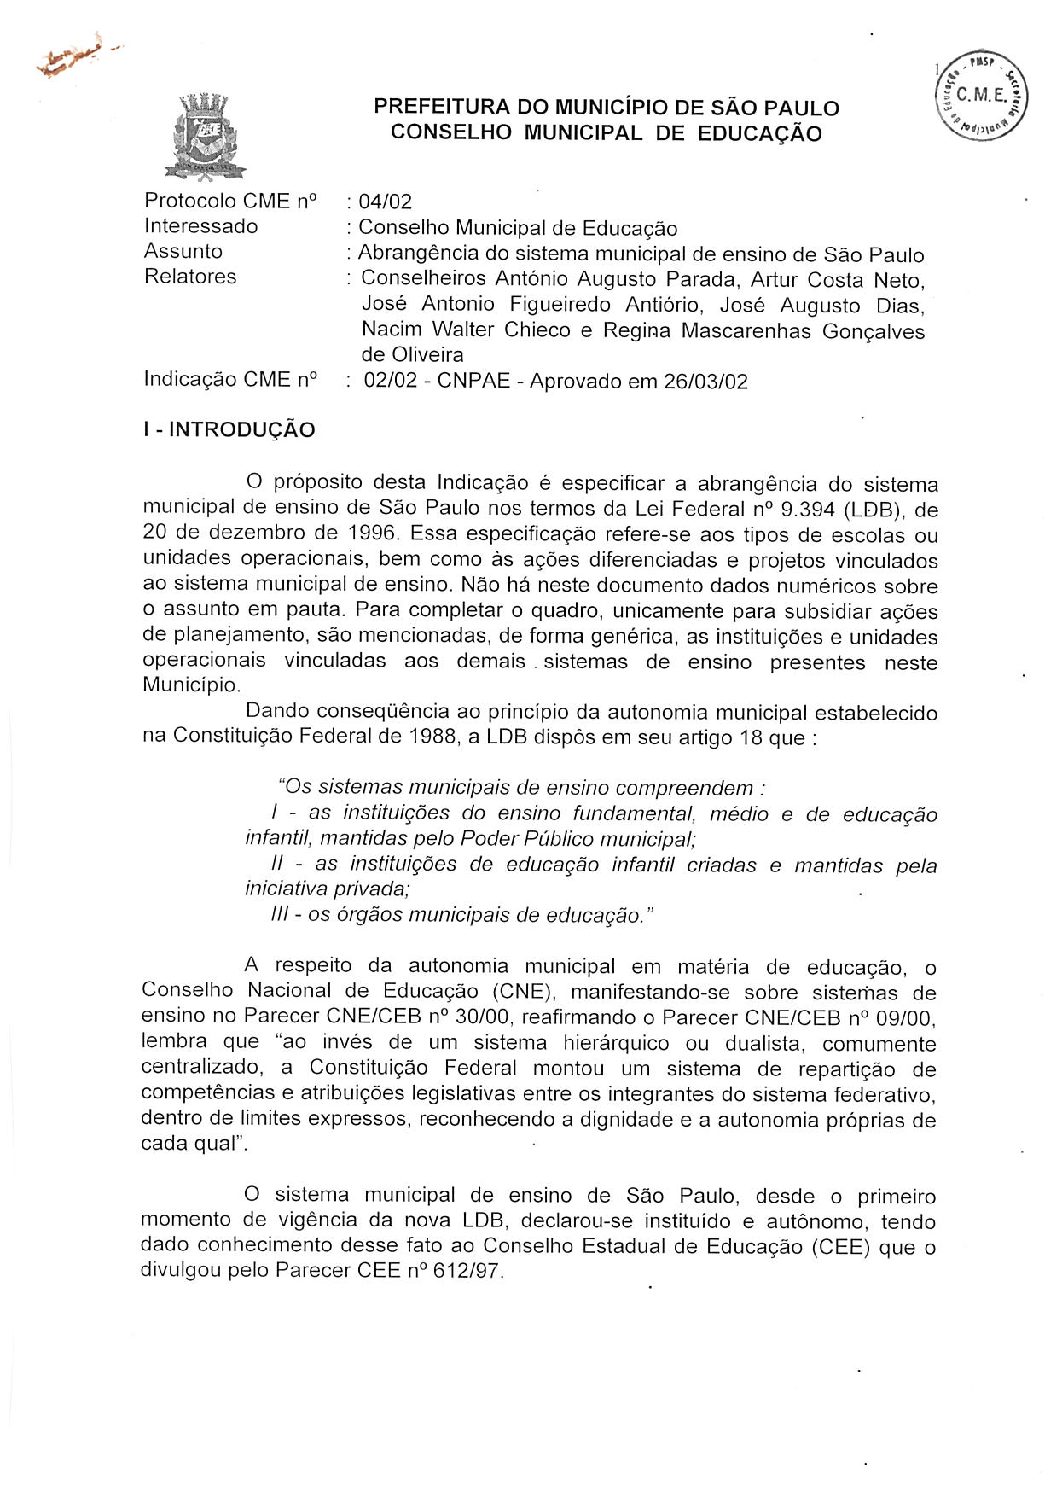 Indicação CME nº 02/2002 - Abrangência do Sistema Municipal de Ensino de São Paulo